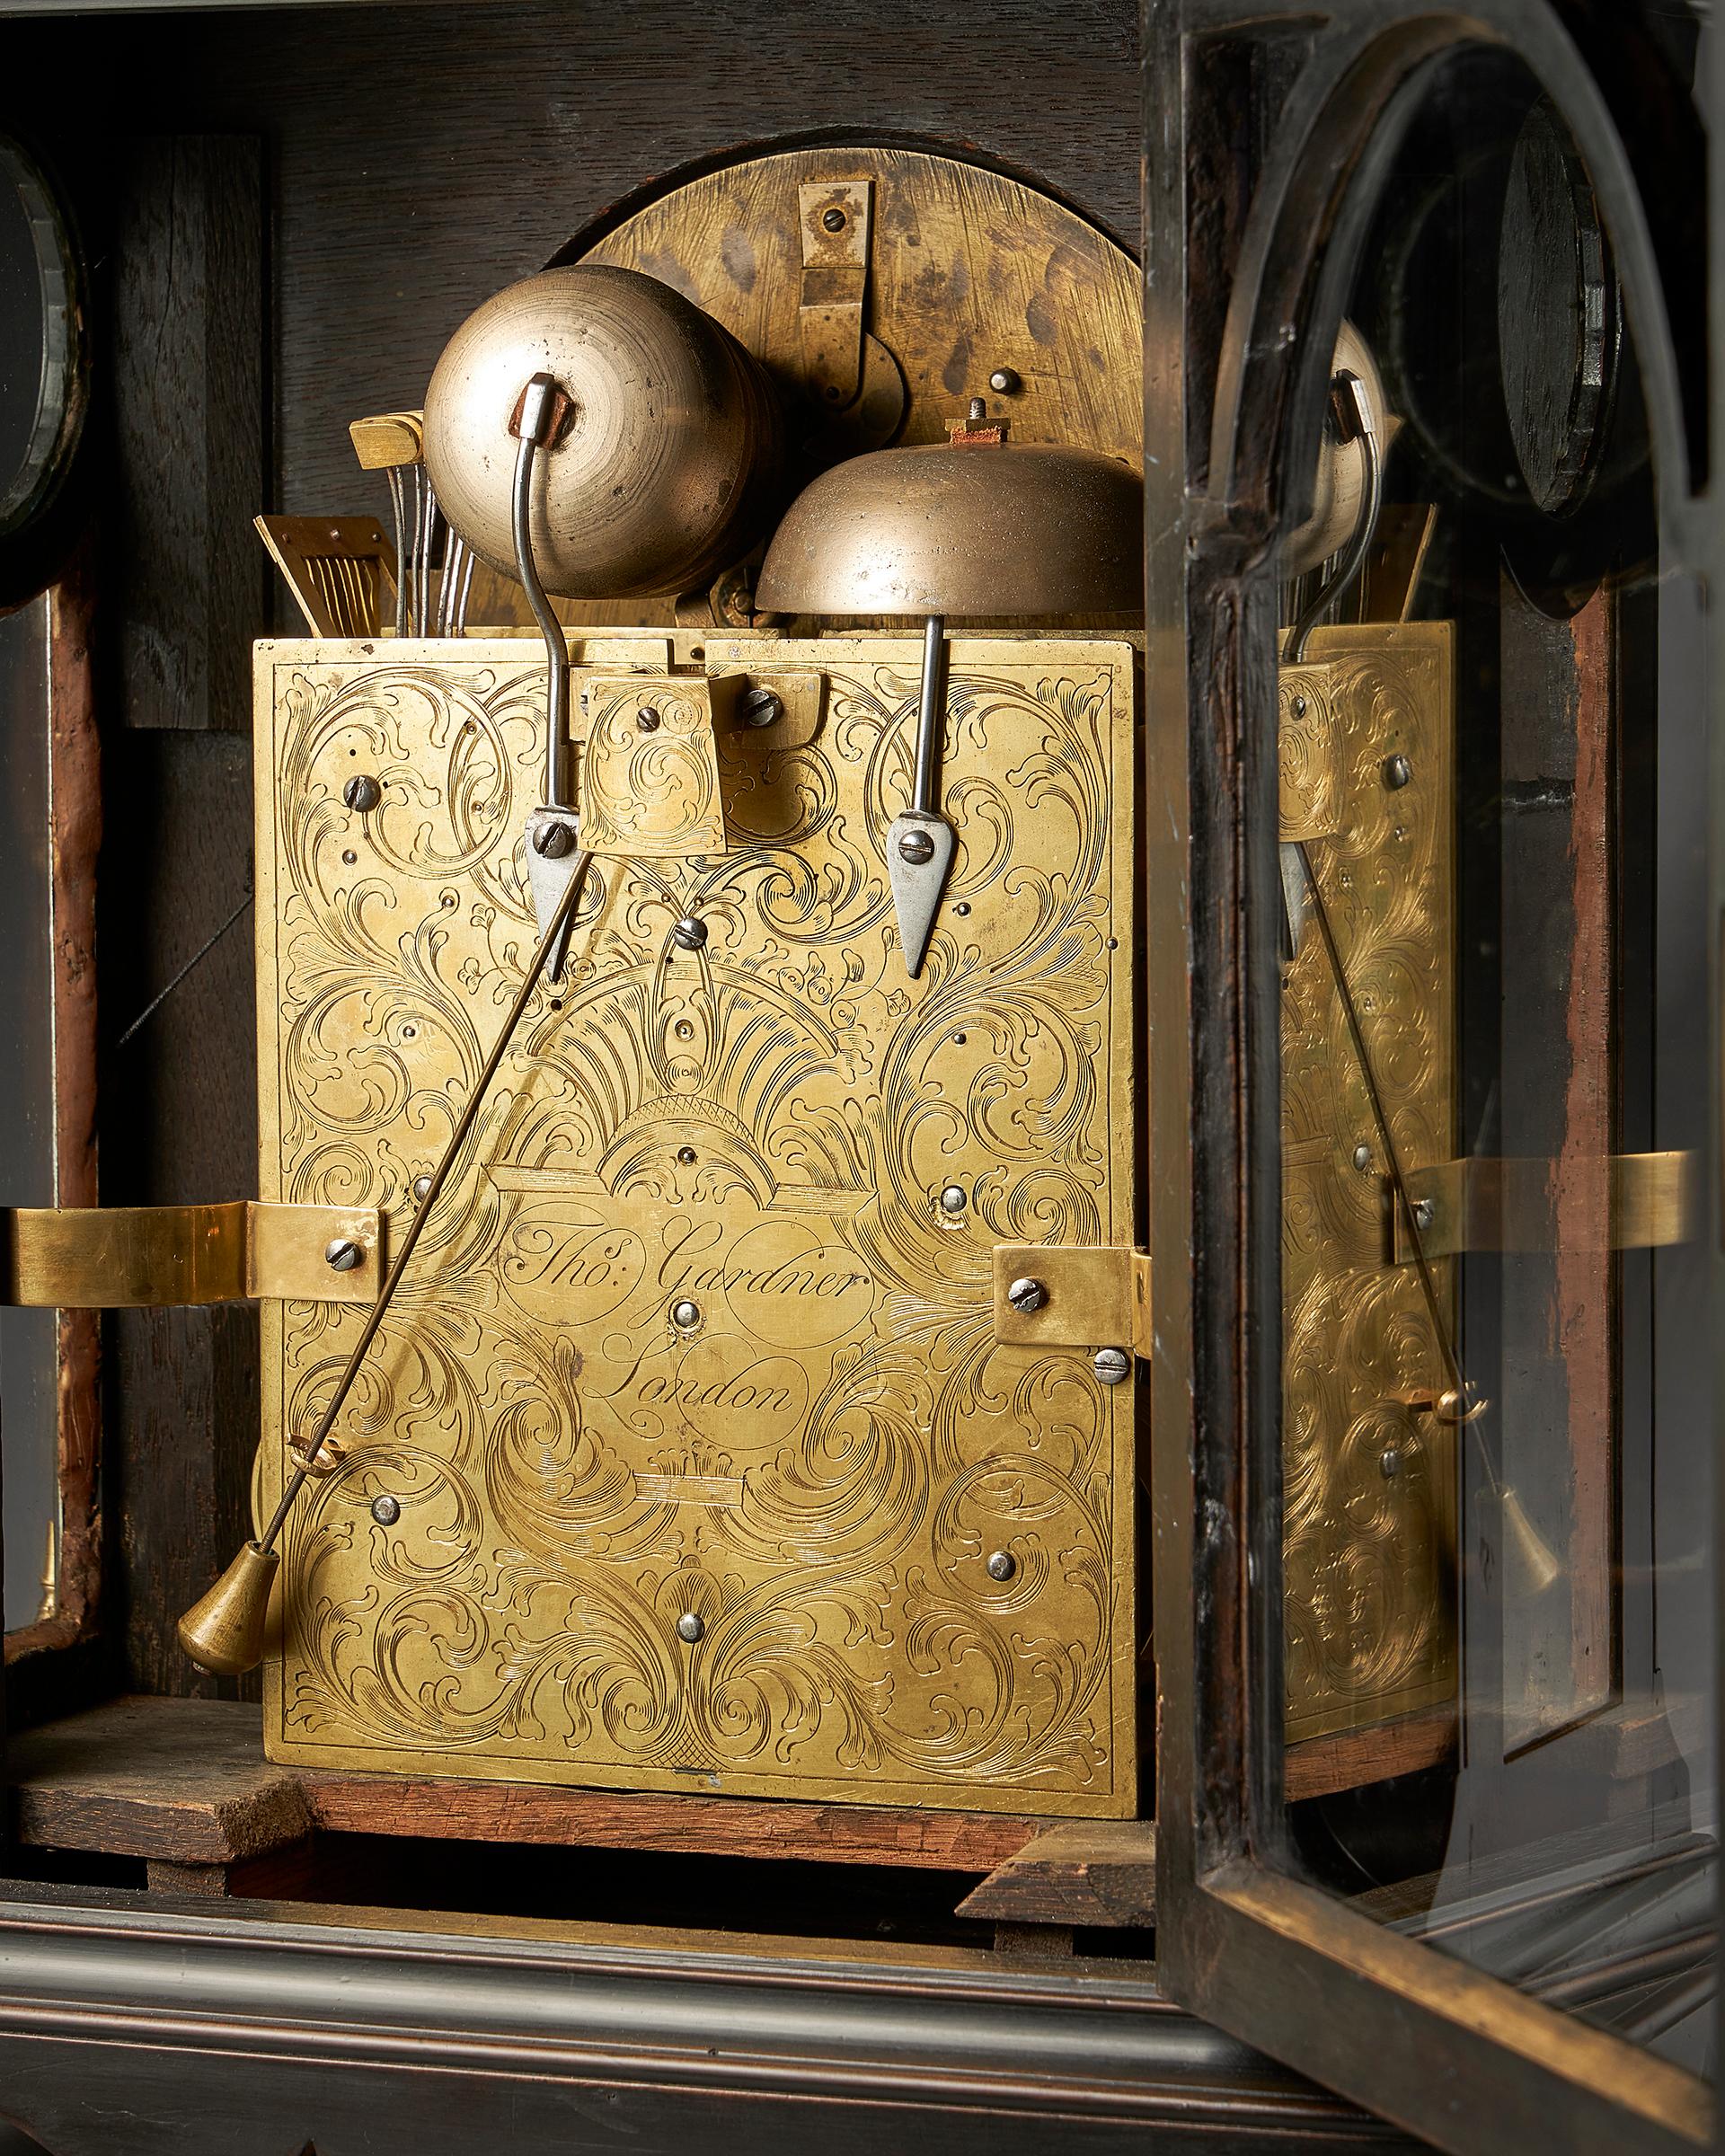 Ebonized Extremely Rare George III 18th Century Quarter-Striking Bracket Clock, Signed